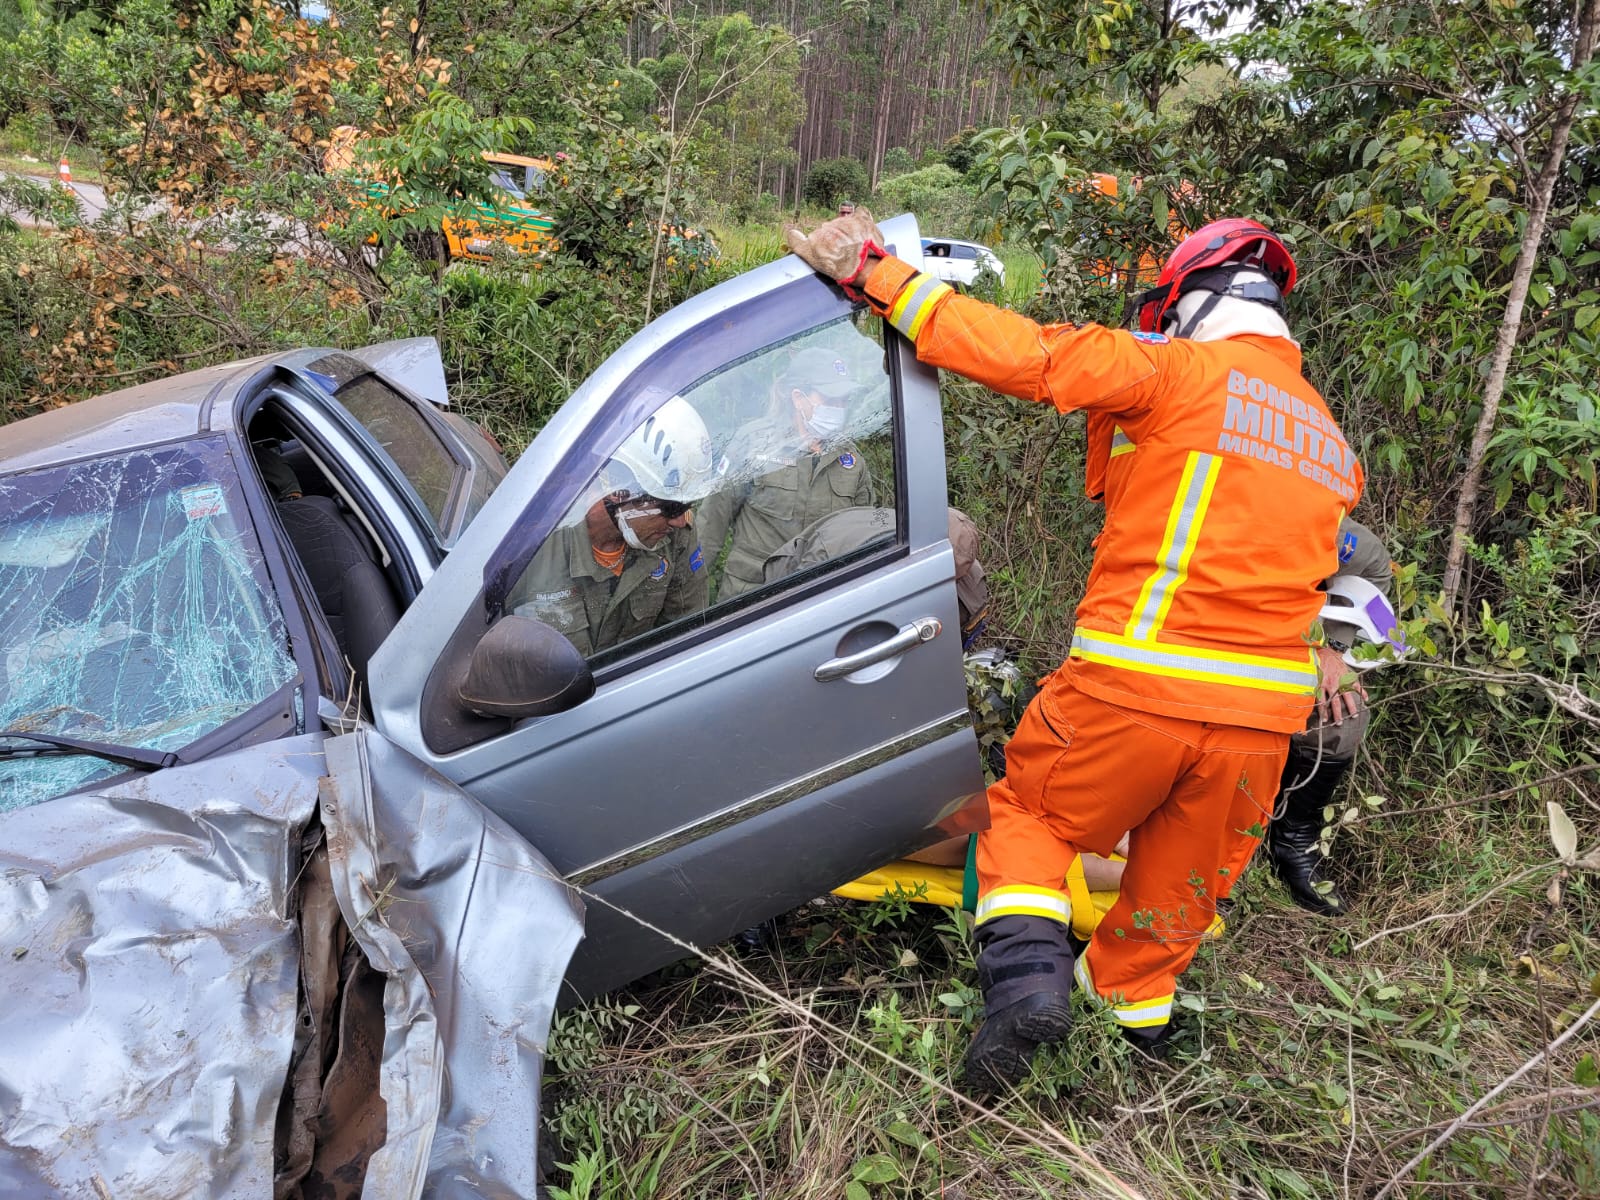 Veículo capota em curva da Serra da Santa, em Itabirito, e vítima sofre escoriações